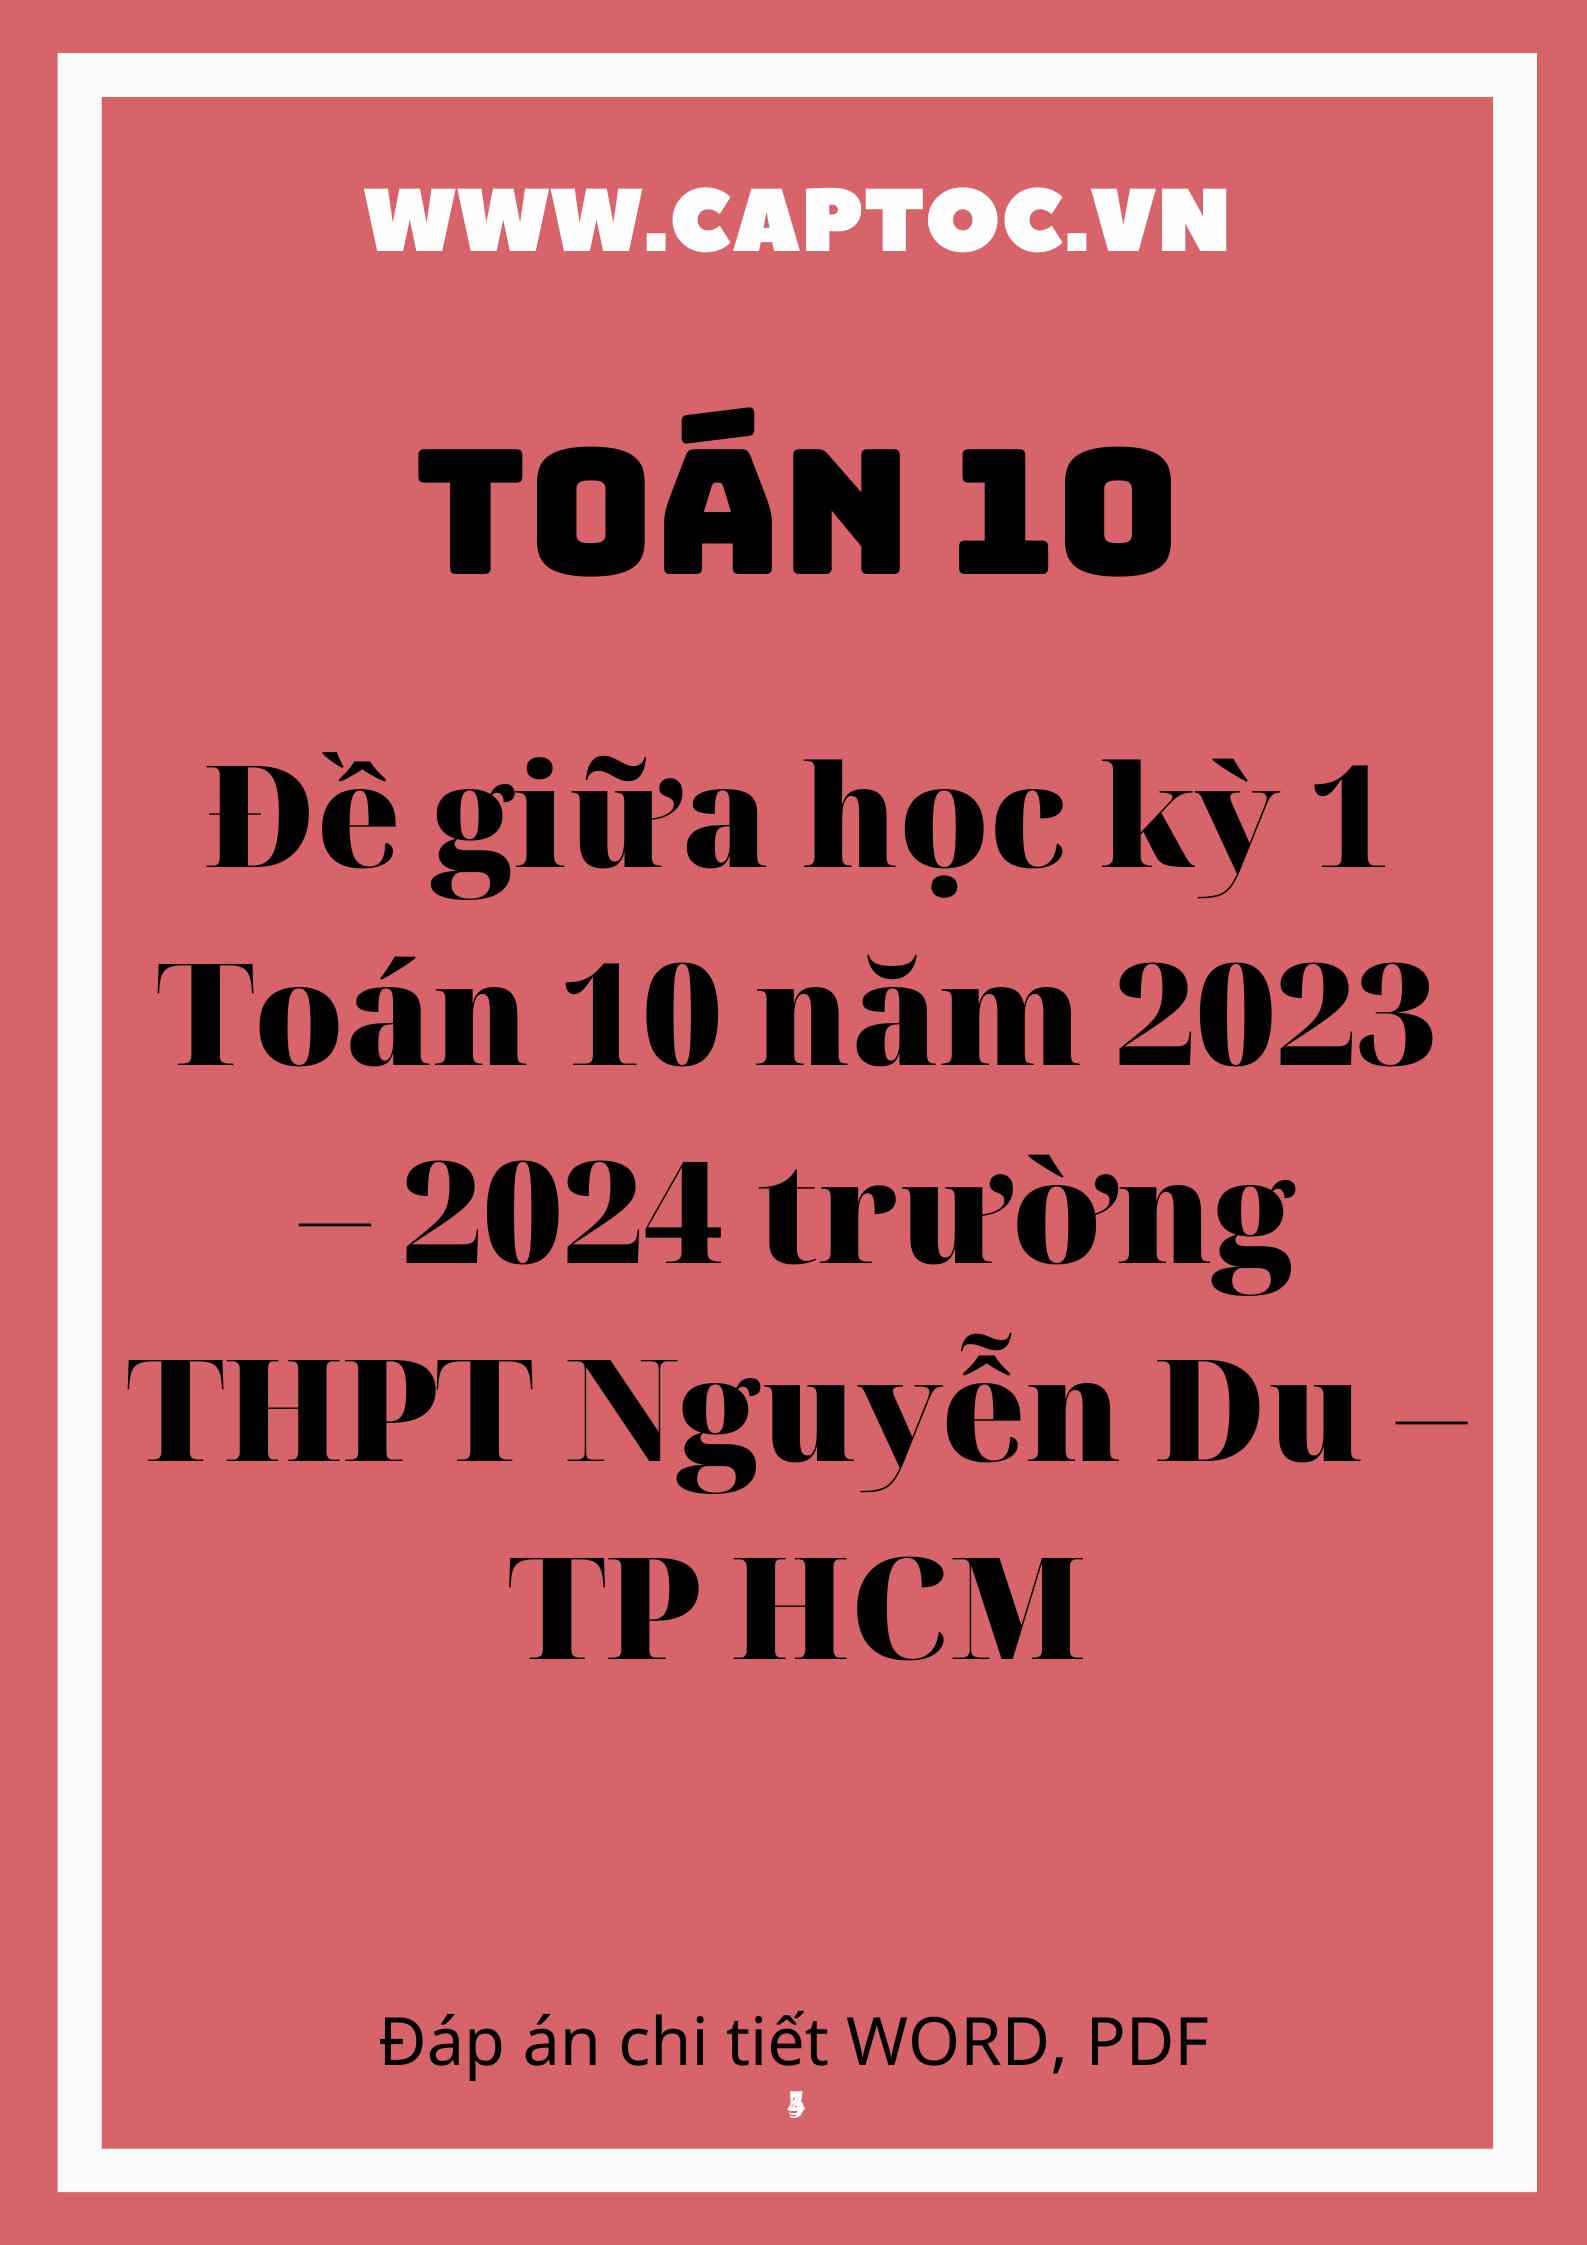 Đề giữa học kỳ 1 Toán 10 năm 2023 – 2024 trường THPT Nguyễn Du – TP HCM